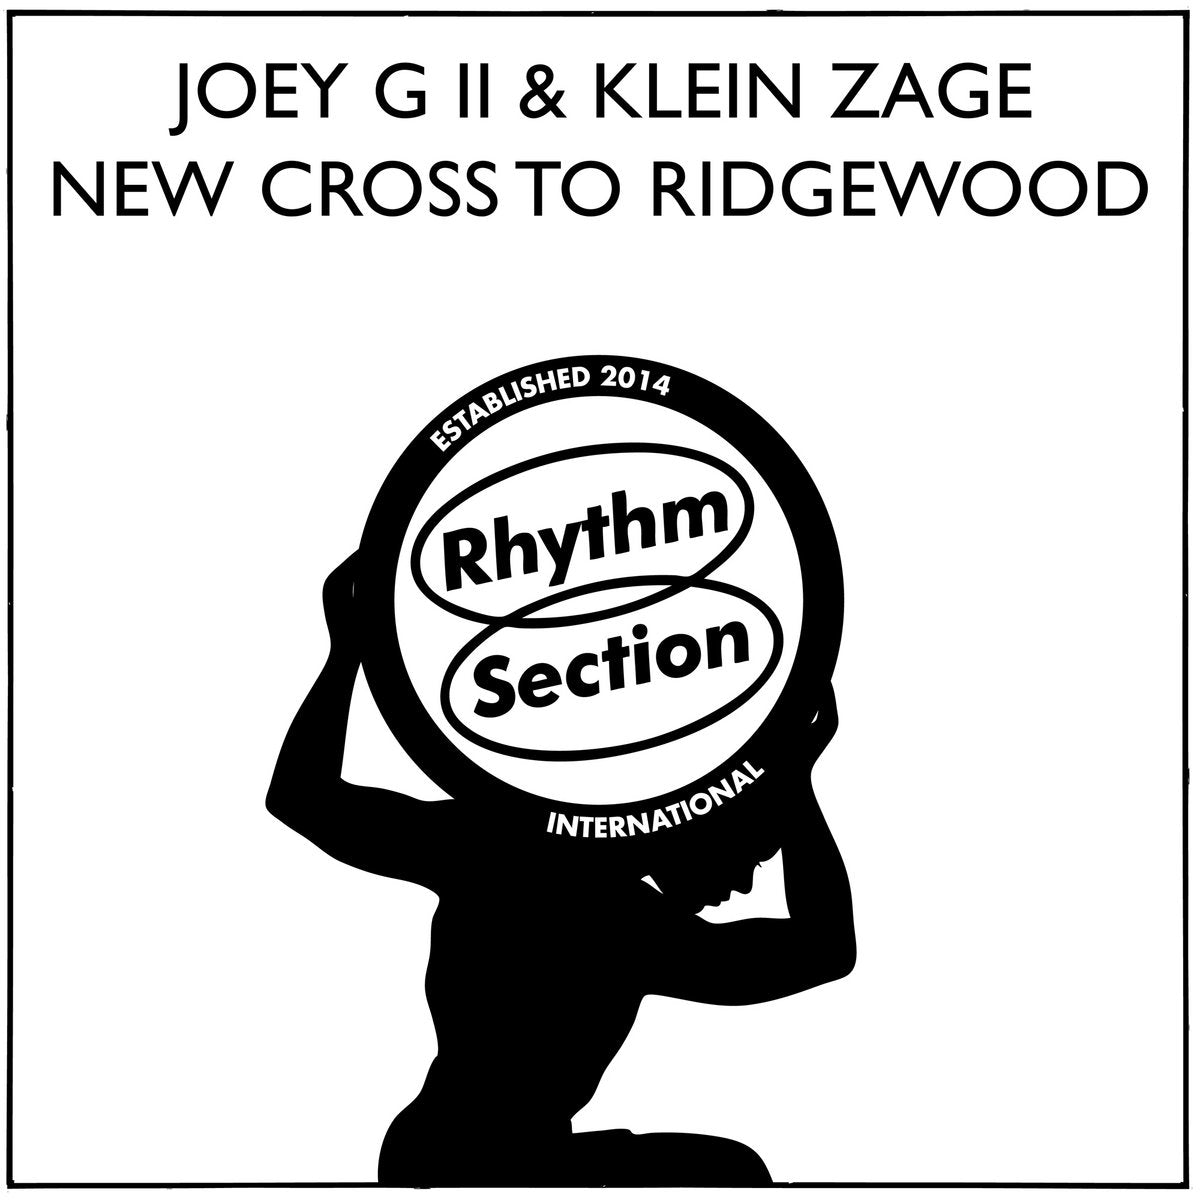 Joey G II & Klein Zage – New Cross To Ridgewood